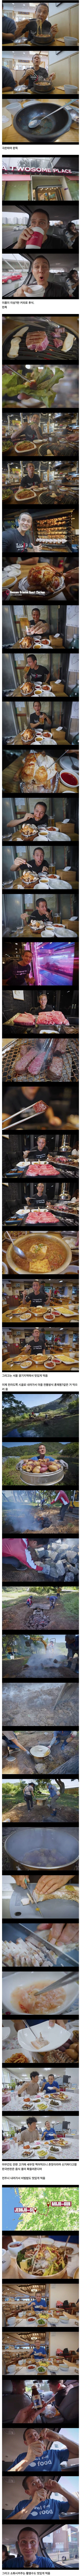 썸네일-한식 먹으려고 전국일주 했던 천만 유튜버-이미지